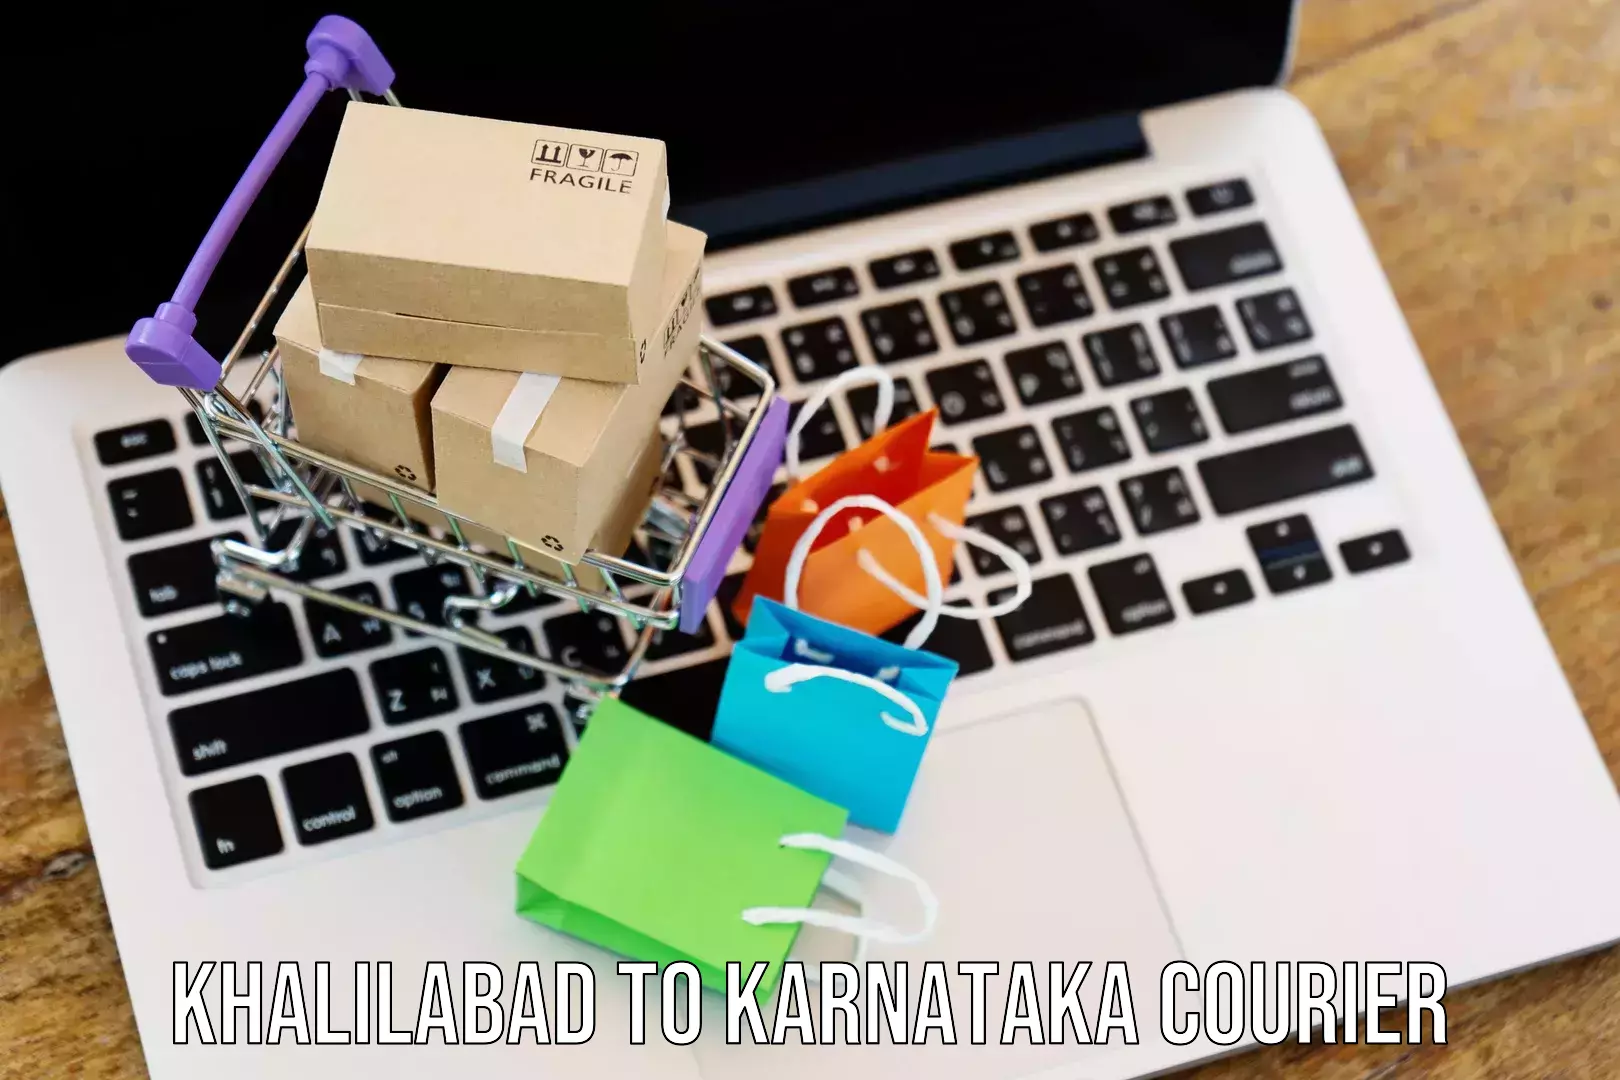 Sustainable courier practices Khalilabad to Yenepoya Mangalore